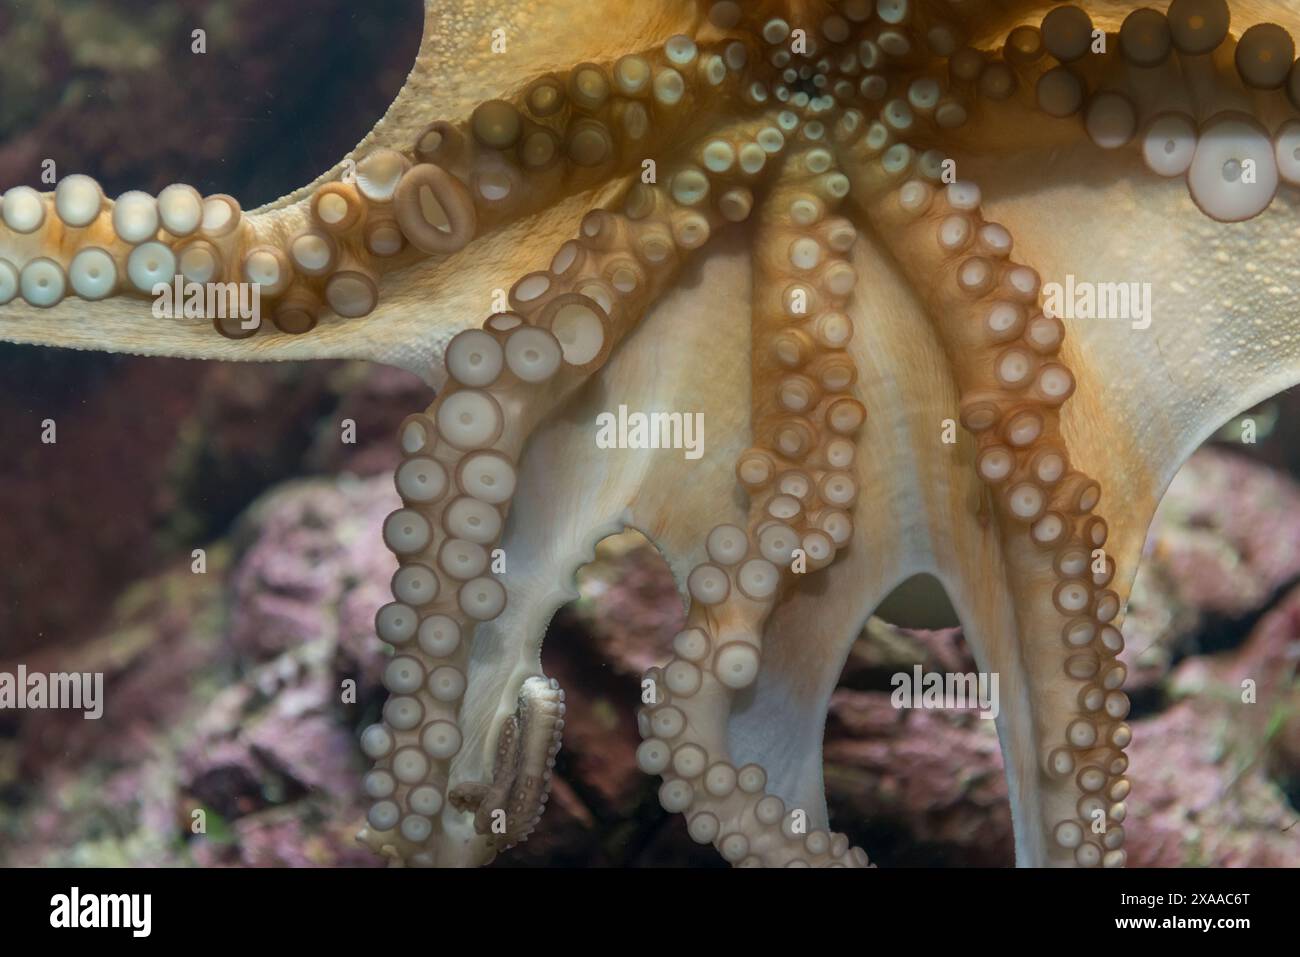 Eine detaillierte Nahaufnahme von Oktopustentakeln. Stockfoto